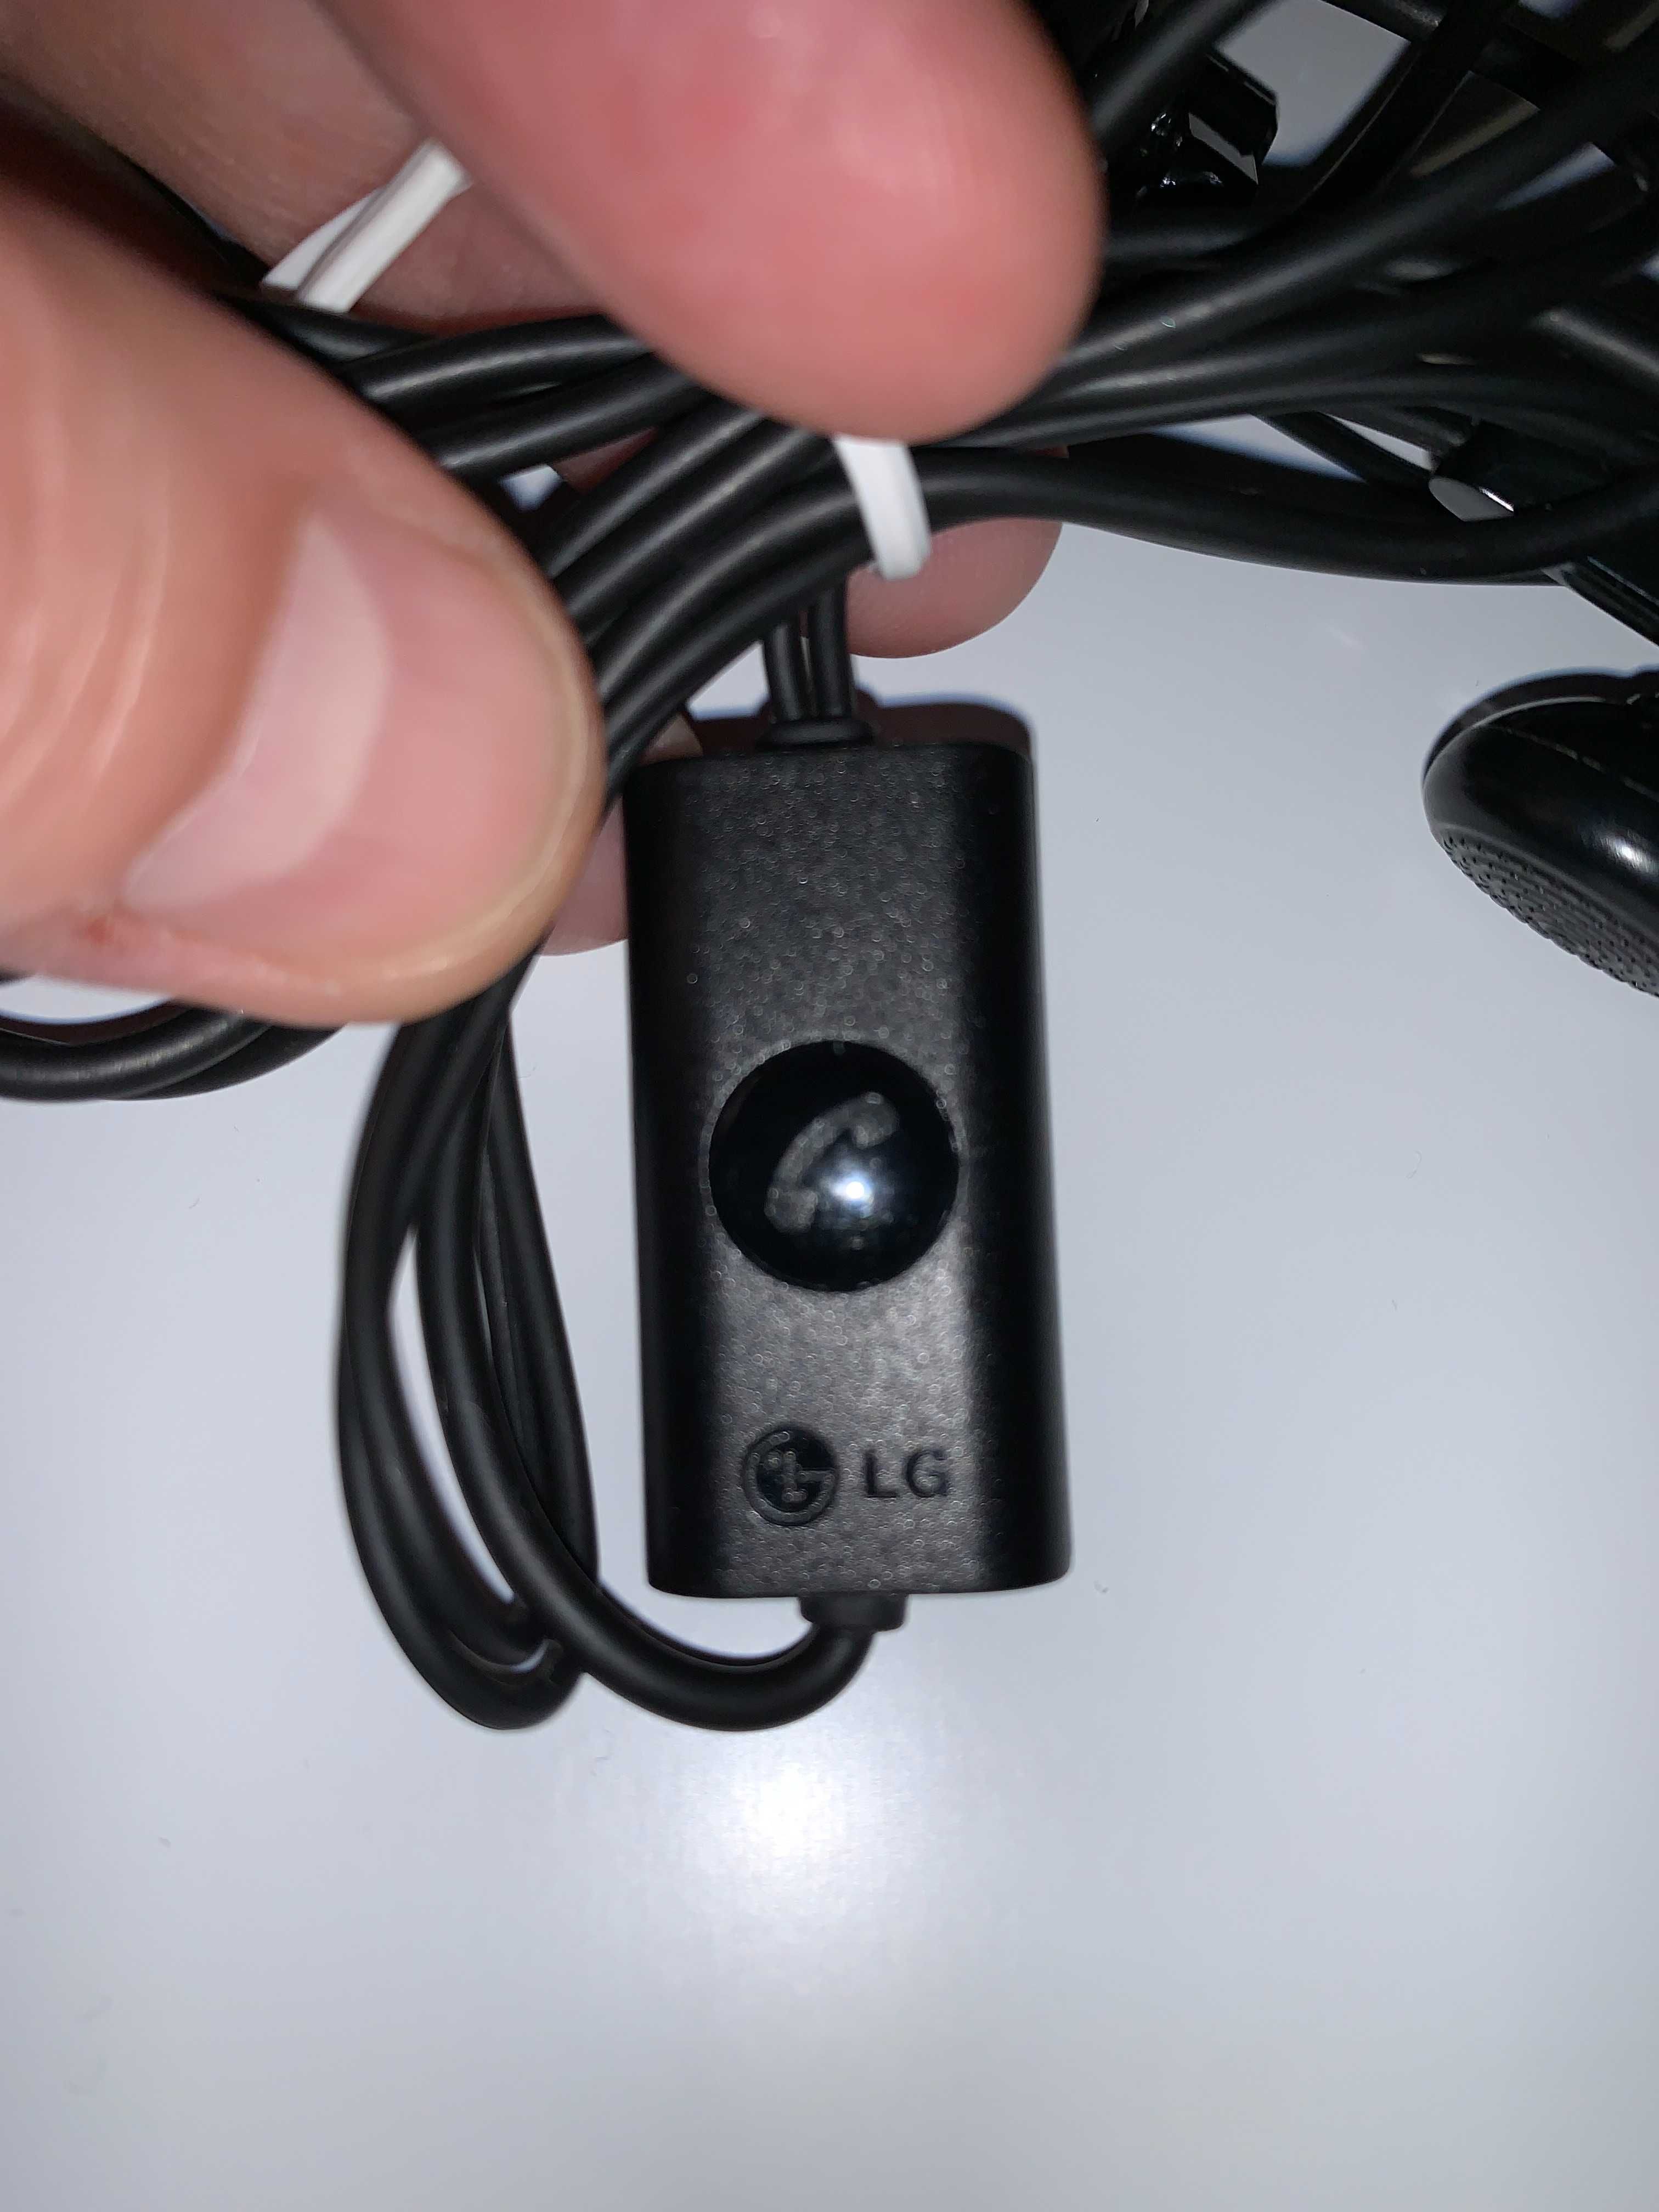 Casti LG cu microfon si mufa micro USB